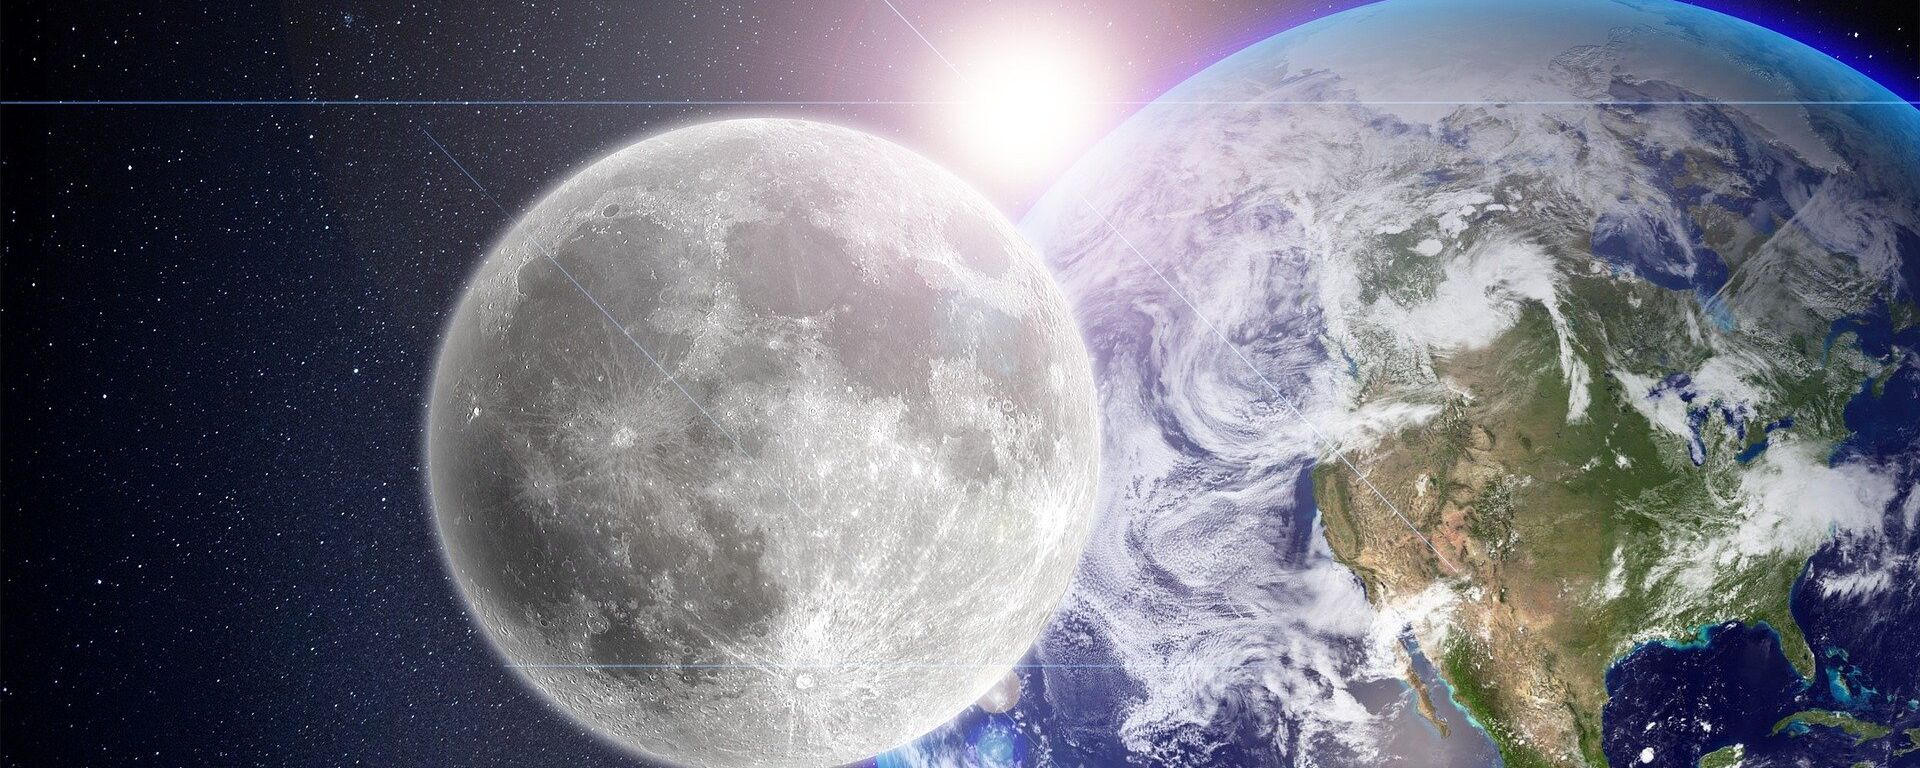 La Luna, la Tierra y el Sol (imagen referencial) - Sputnik Mundo, 1920, 23.09.2021